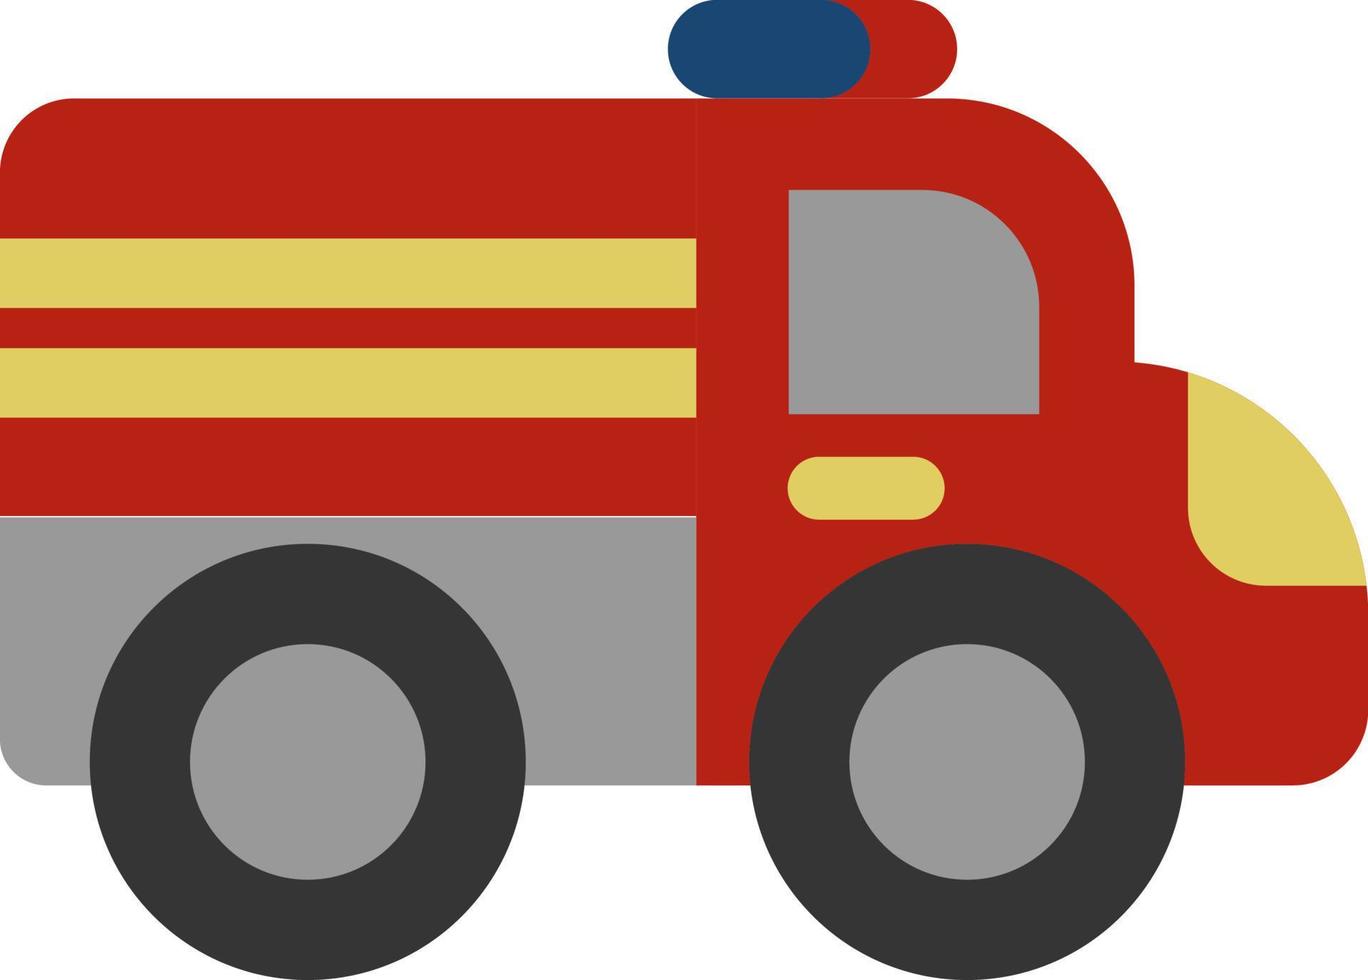 caminhão de bombeiros vermelho, ilustração, vetor em um fundo branco.